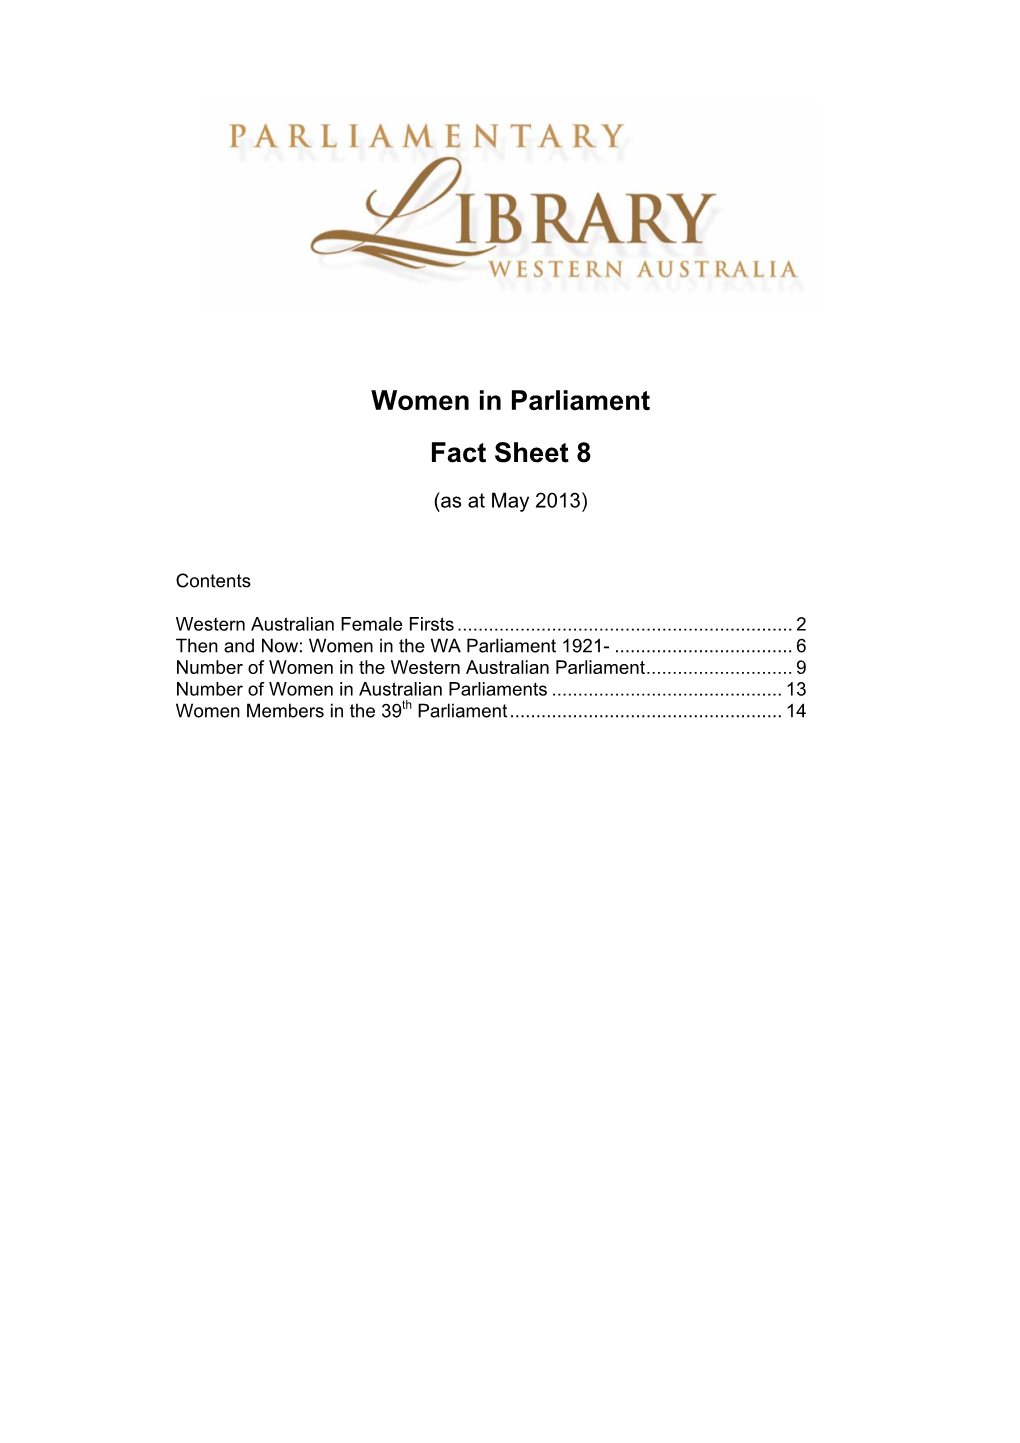 Women in Parliament Fact Sheet 8